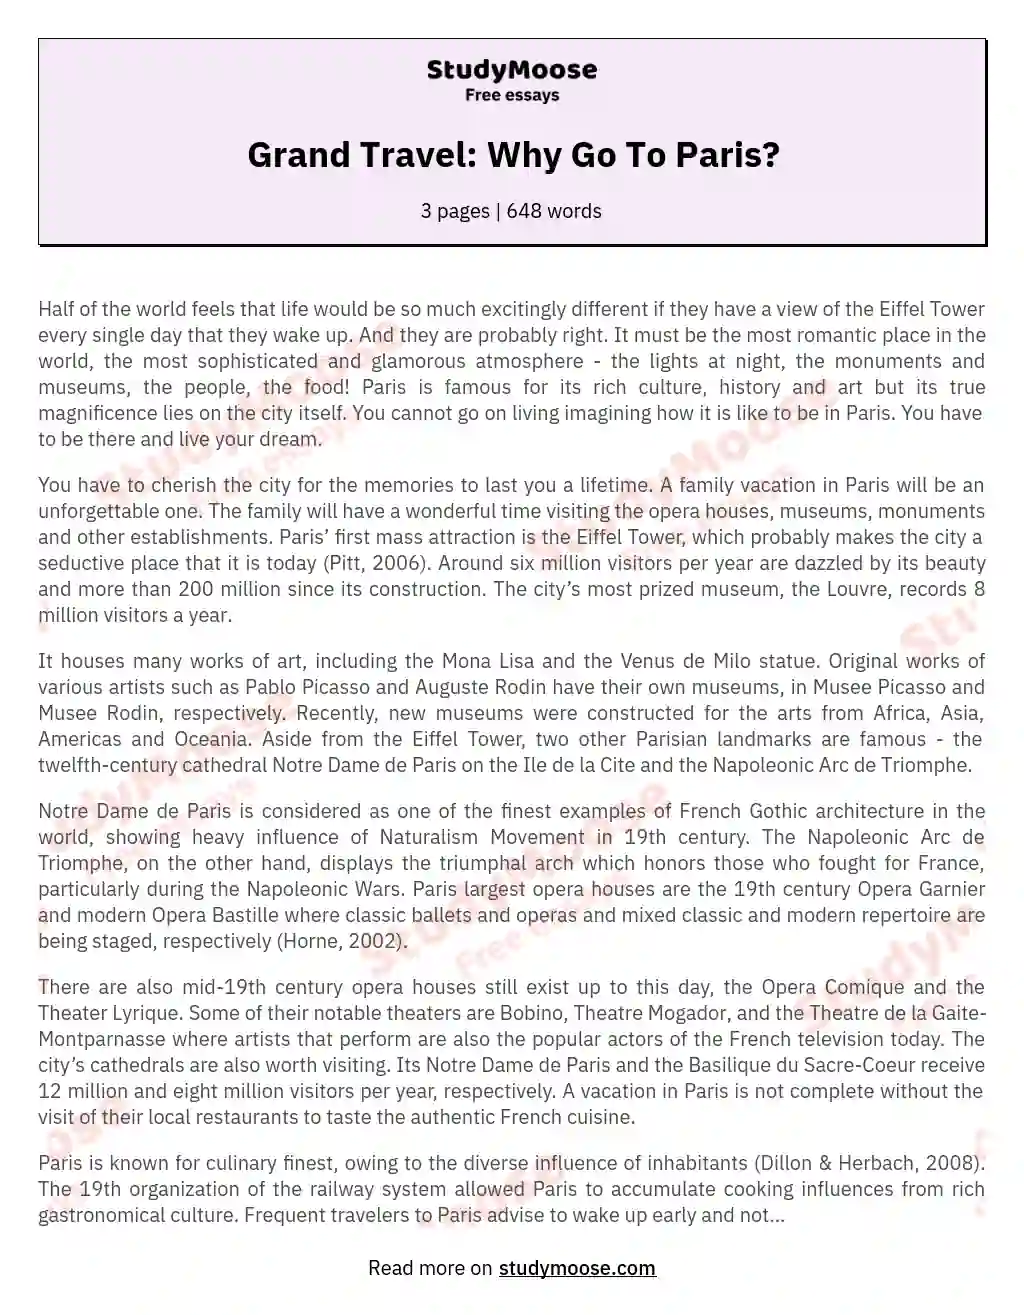 Grand Travel: Why Go To Paris? essay